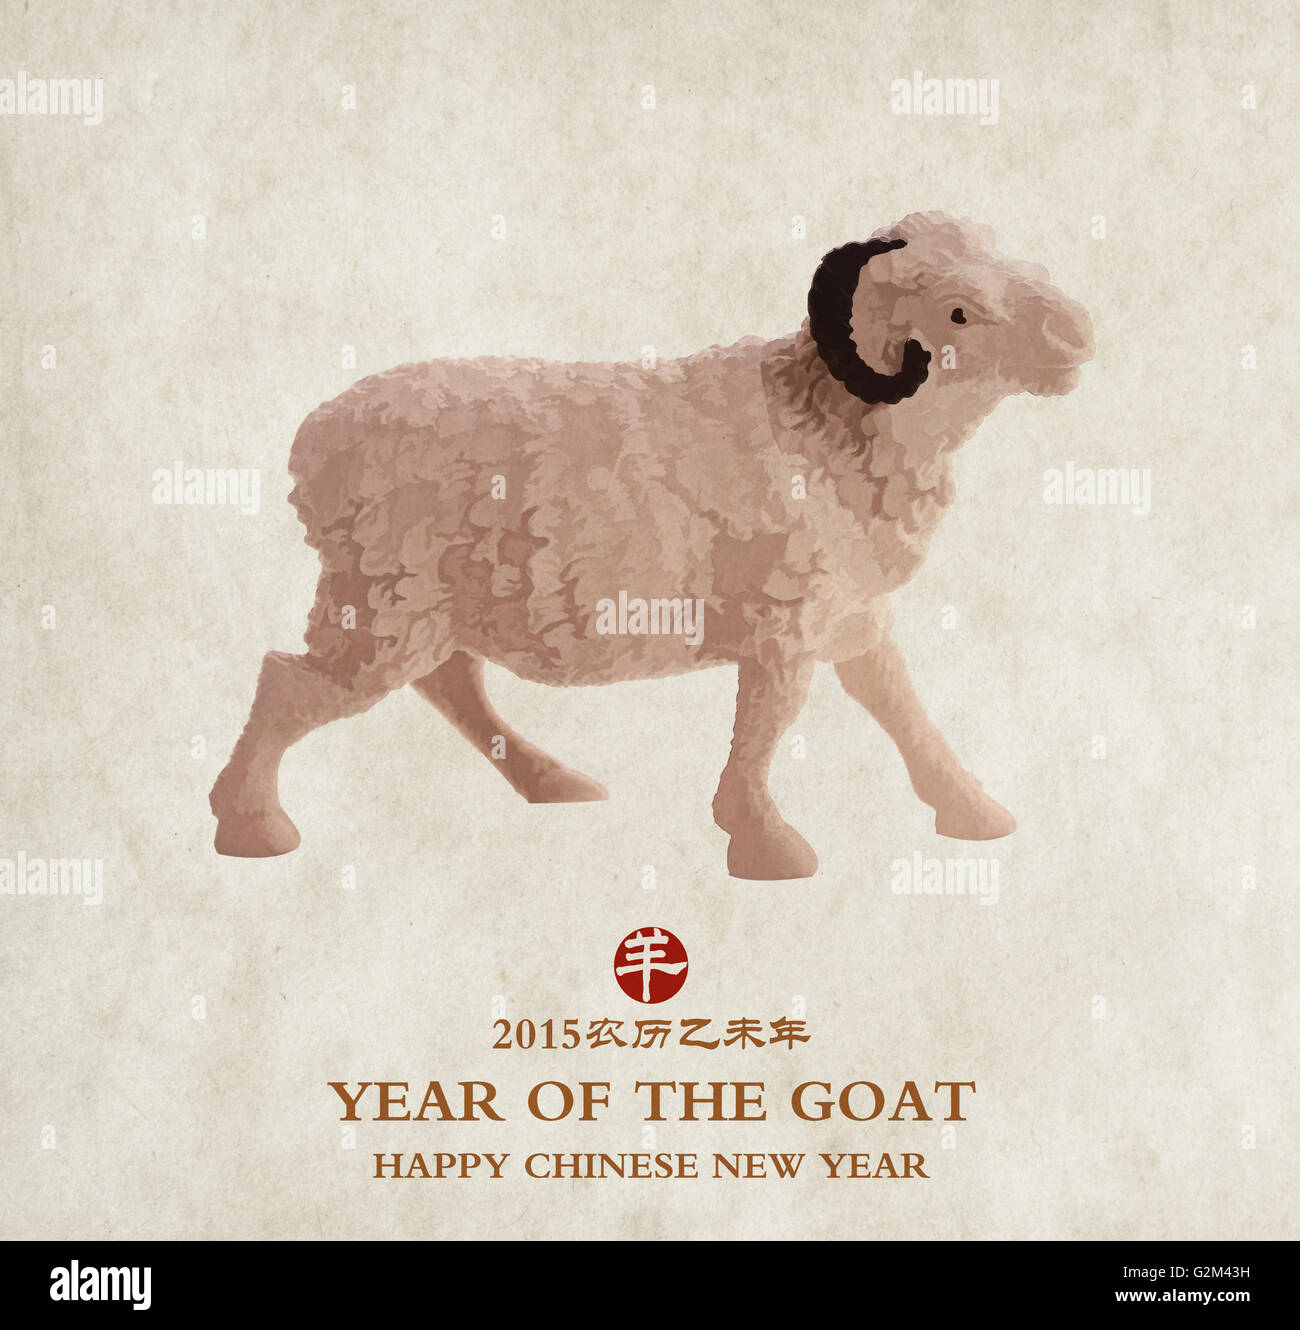 Bonne année 2015 avec des dessins de chèvre Banque D'Images